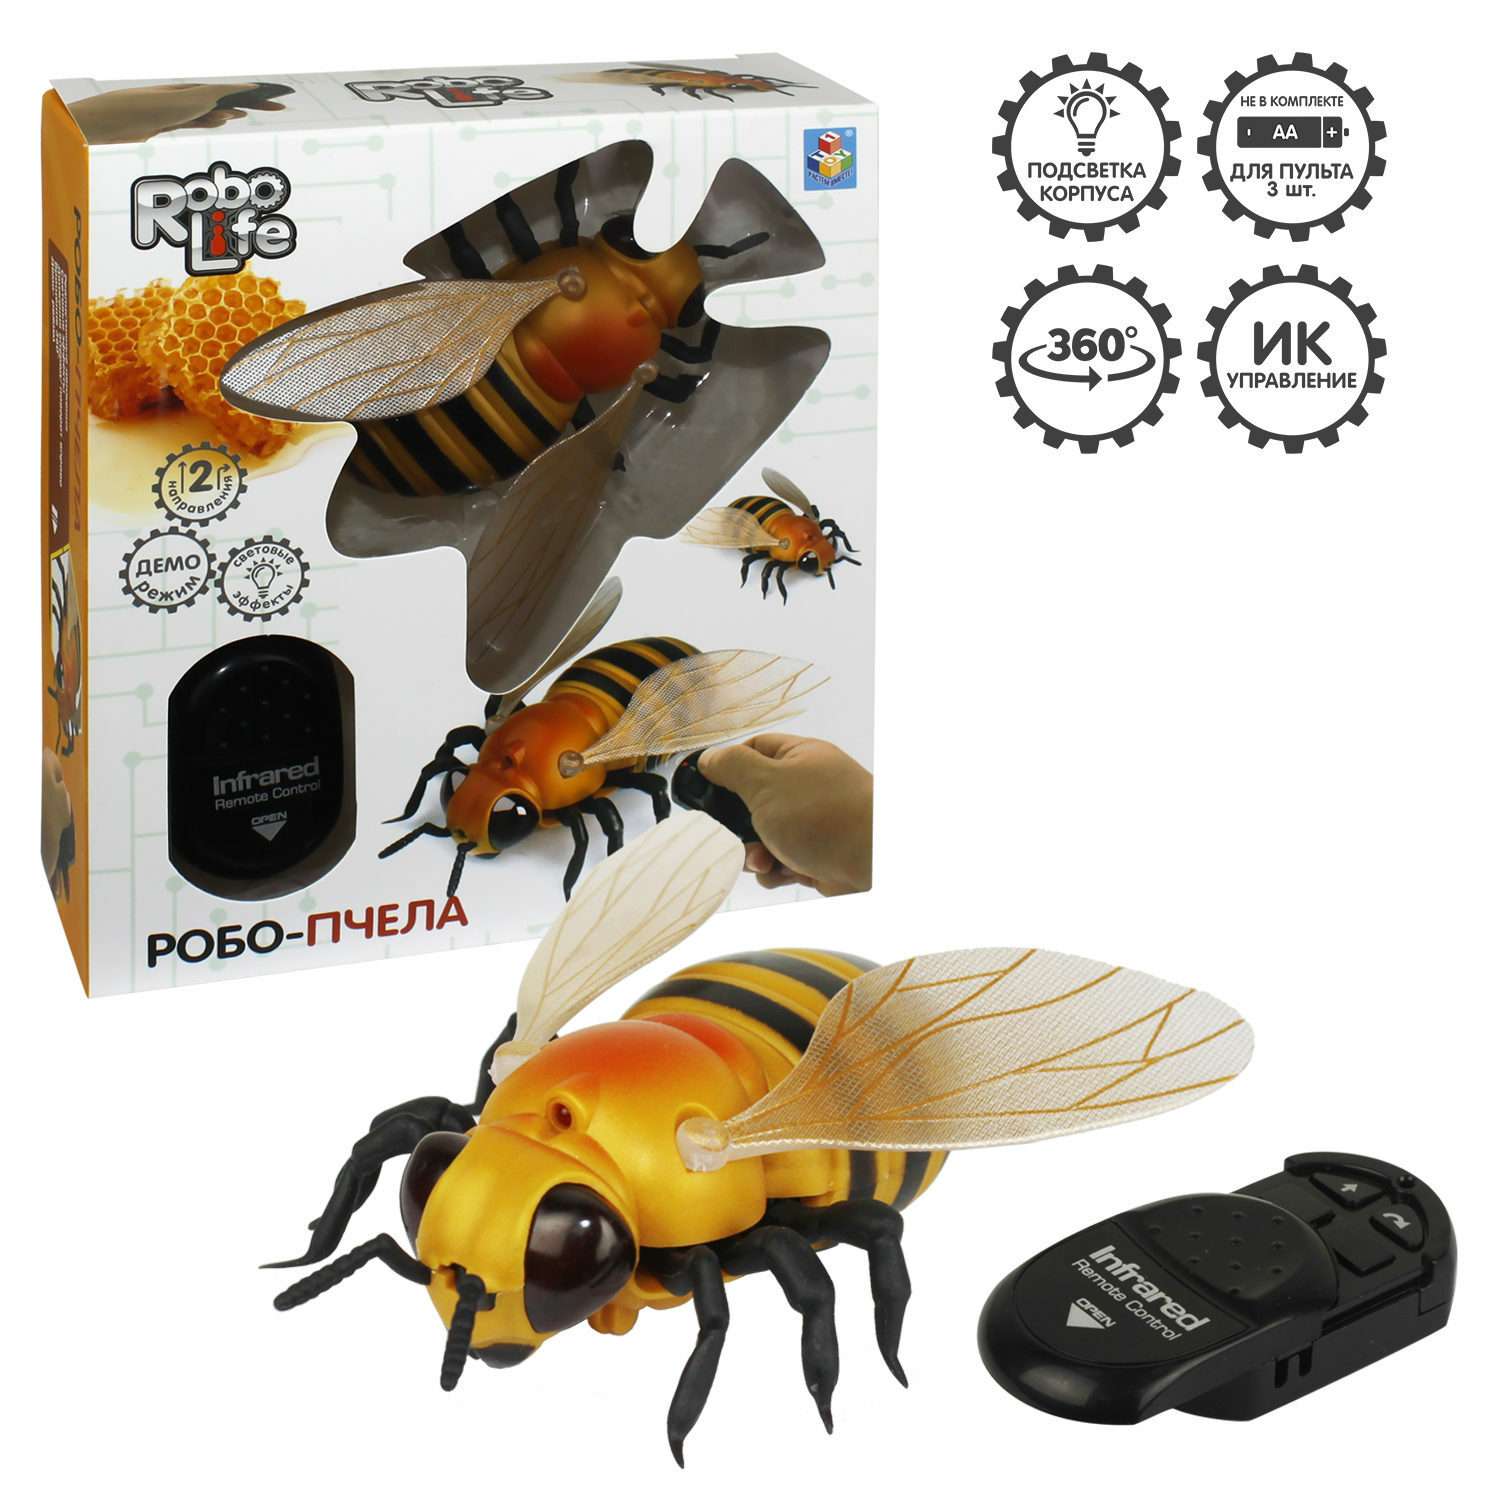 Интерактивная игрушка 1TOY Робо-пчела на ИК управлении с световыми эффектами - фото 2